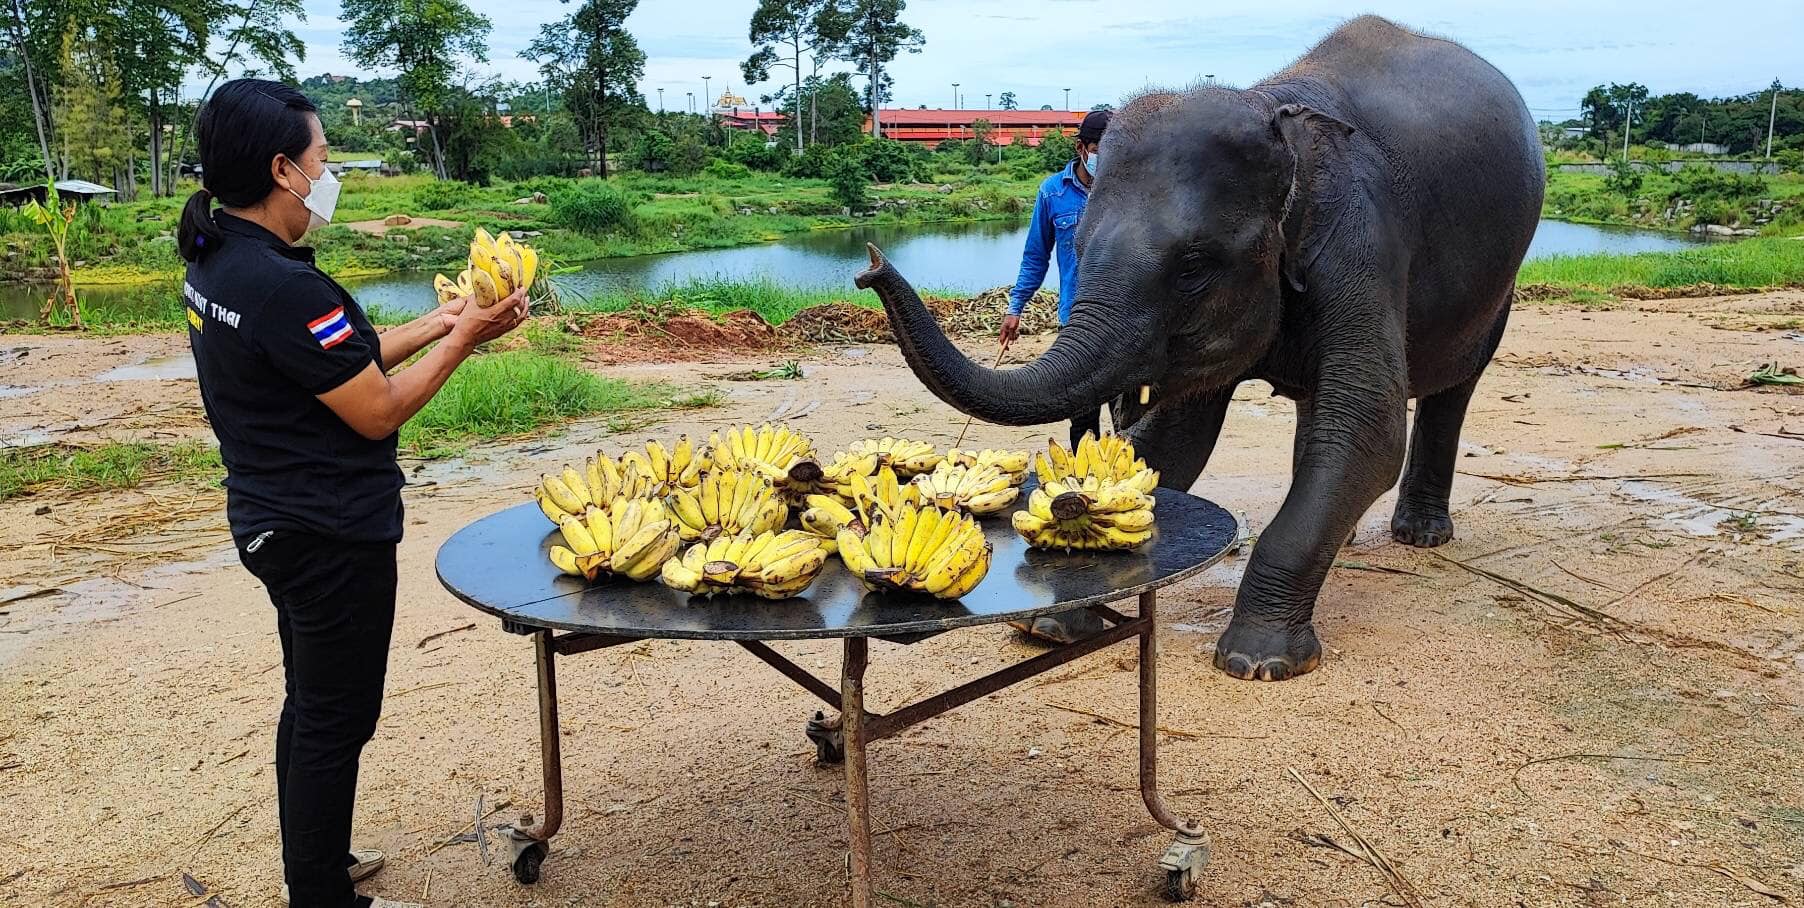 ลูกค้าใจบุญ ร่วมสมทบทุน ซื้อกล้วยให้ ช้างตั้งครรภ์ “พังรัฐธรรมนูญ”